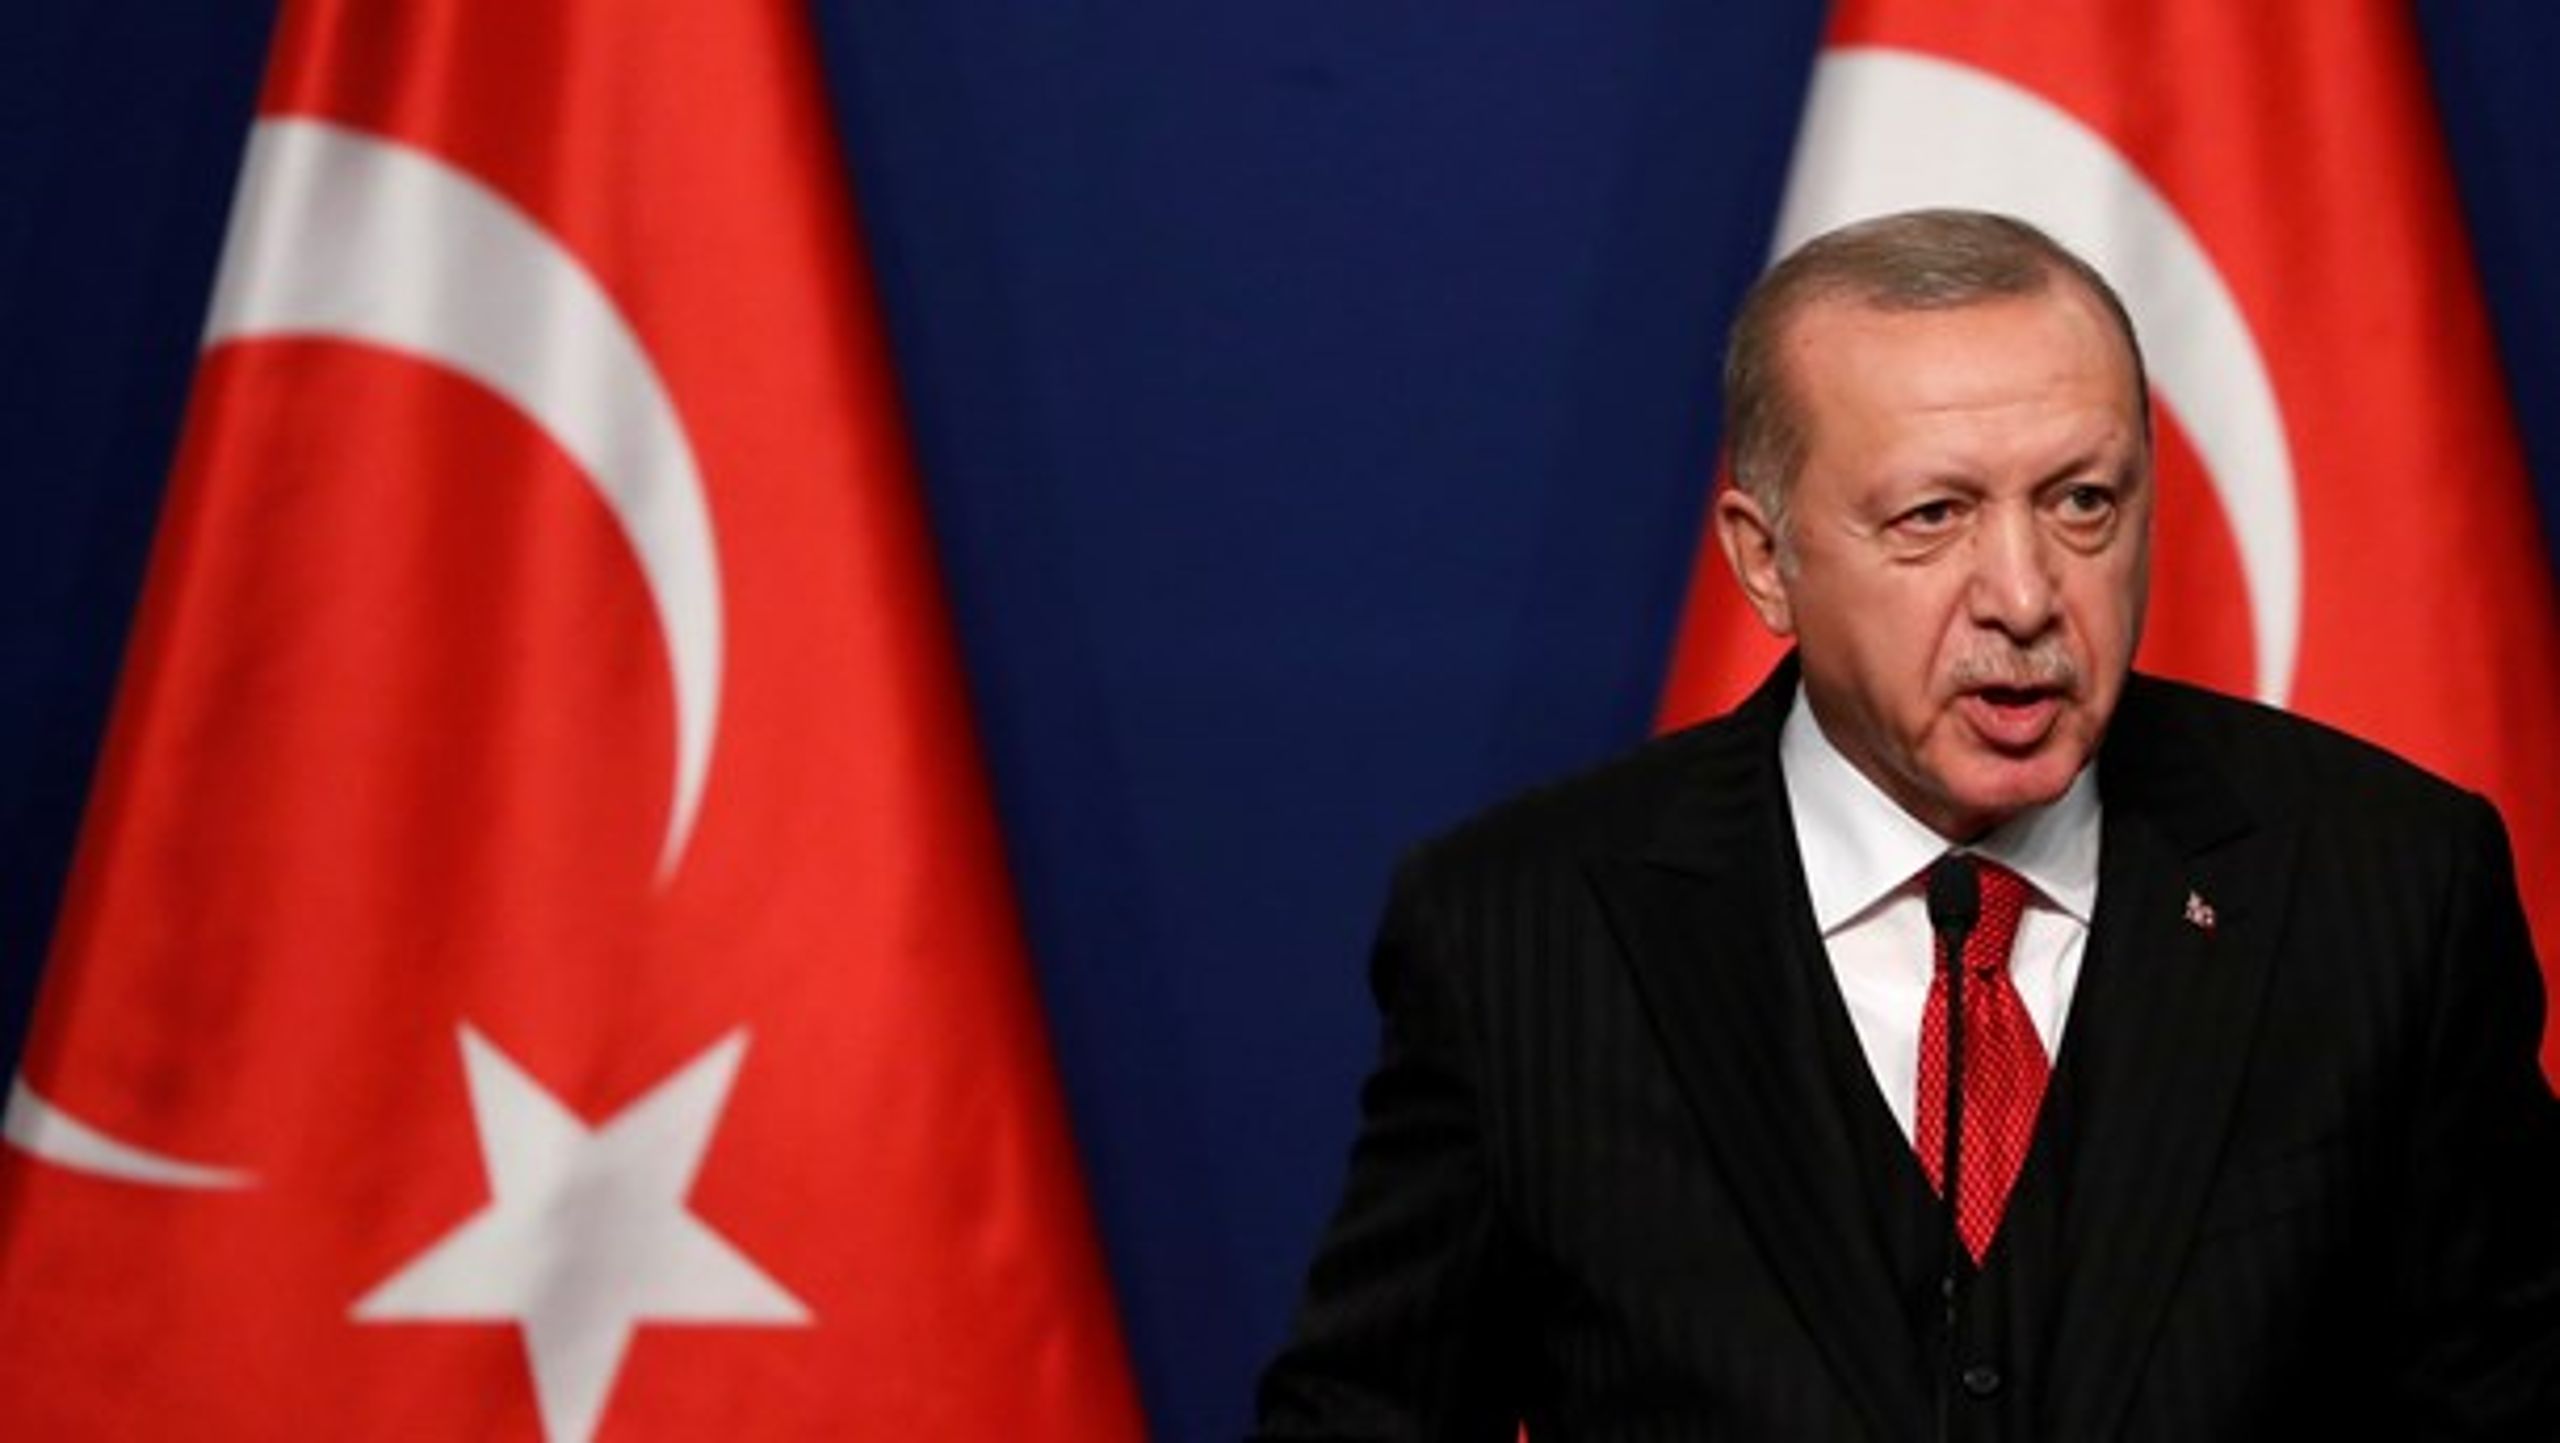 Det er problematisk, når medier og politikere fremsætter falske påstande og trækker Erdogan-kortet, som ikke har relevans for&nbsp;indholdet i en rapport om islamofobi, skriver forskere.